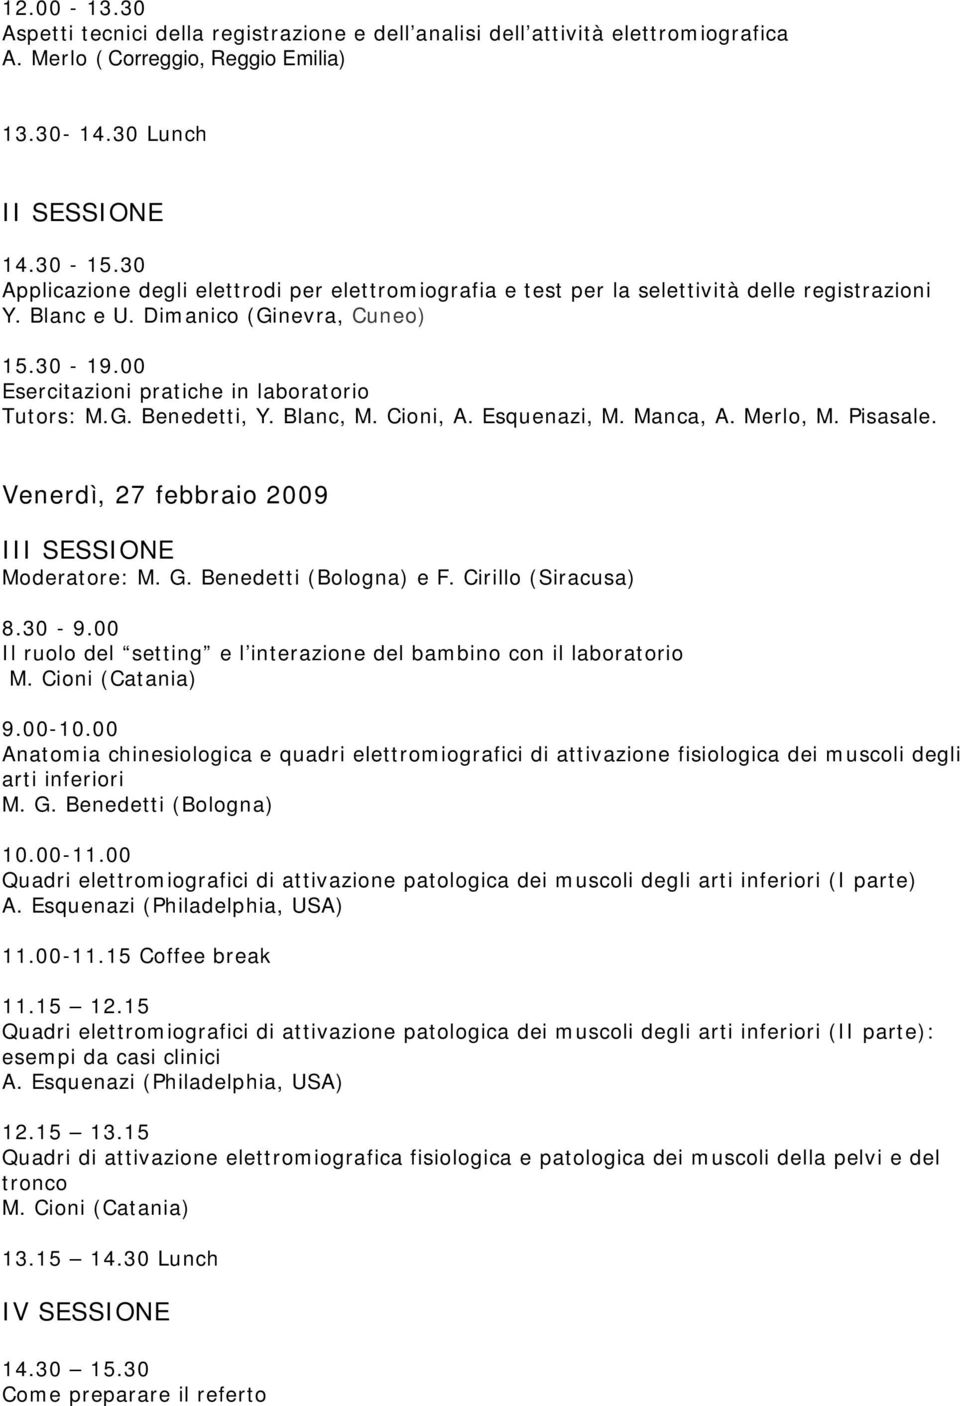 G. Benedetti, Y. Blanc, M. Cioni, A. Esquenazi, M. Manca, A. Merlo, M. Pisasale. Venerdì, 27 febbraio 2009 III SESSIONE Moderatore: M. G. Benedetti (Bologna) e F. Cirillo (Siracusa) 8.30-9.